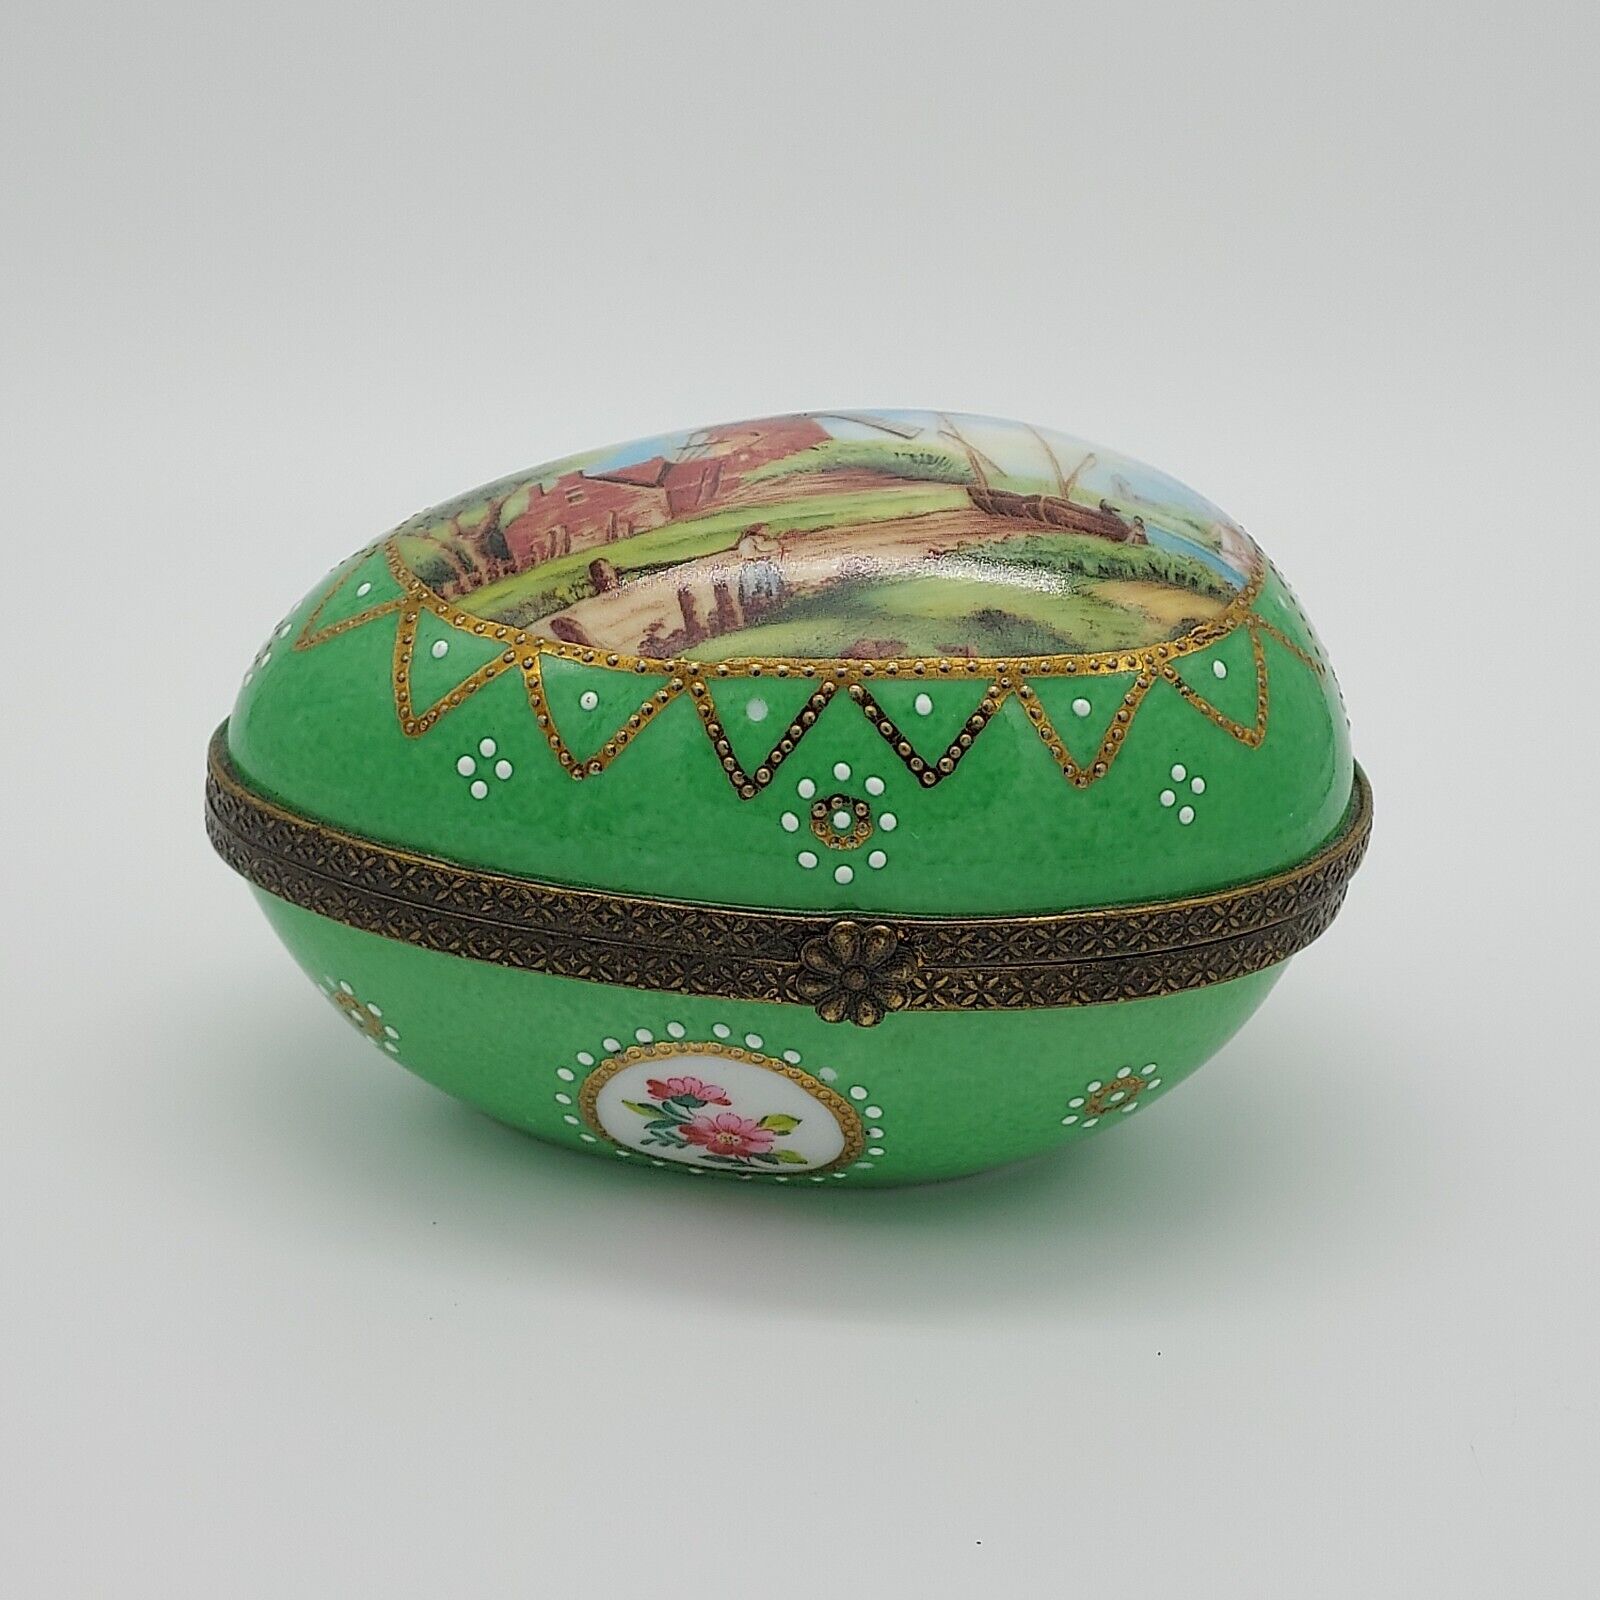 Vtg Limoges France Porcelain Trinket Box Egg Shaped Country Windmill Scene